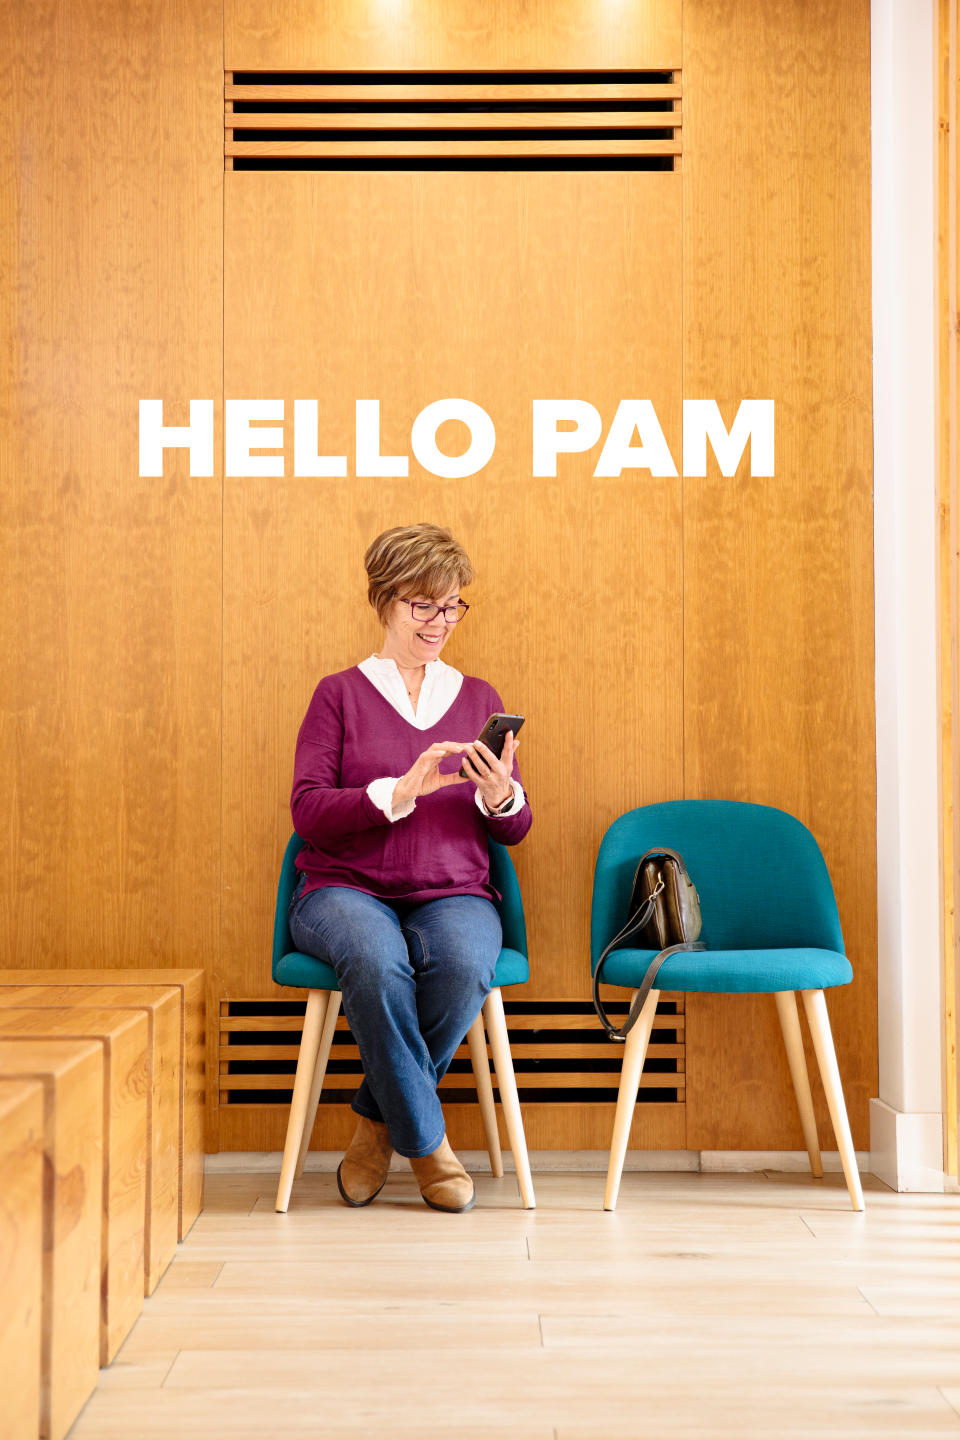 "Hello Pam"